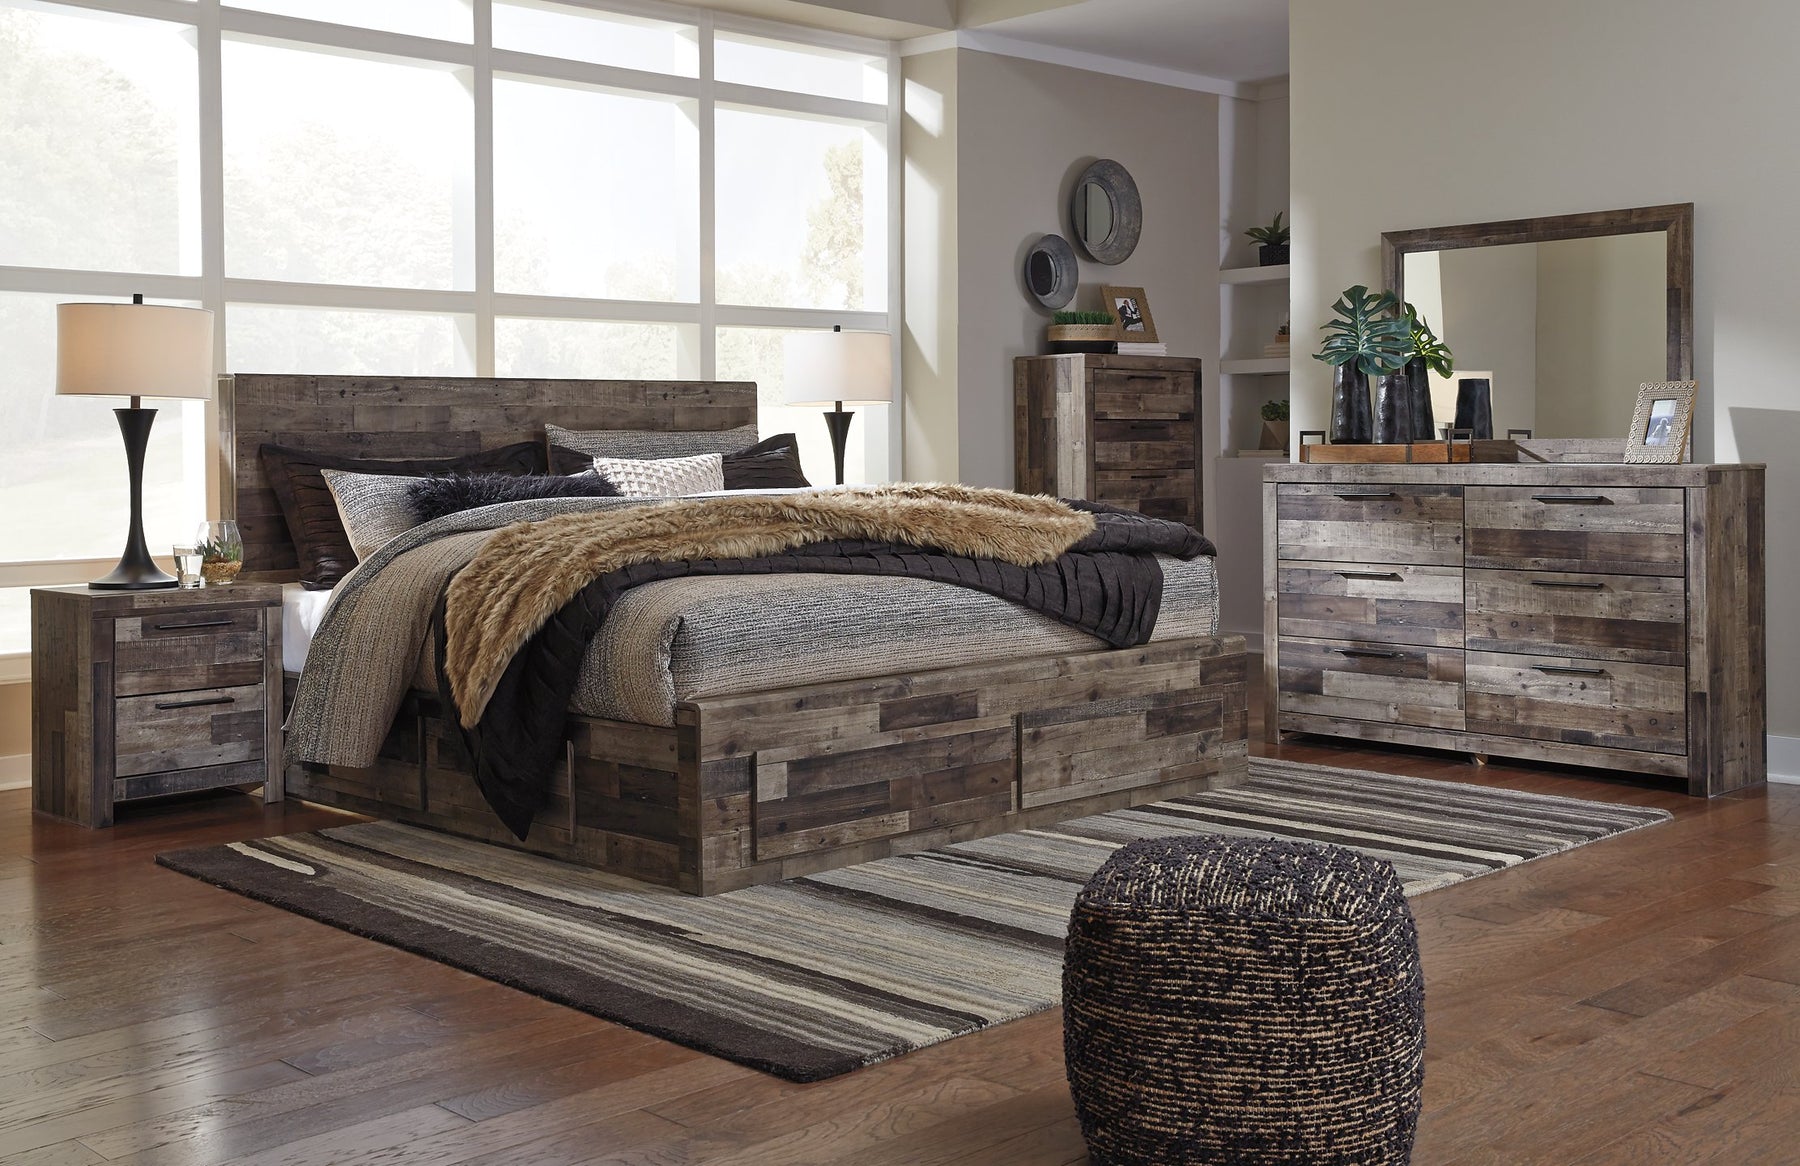 Derekson Bed with 4 Storage Drawers - Half Price Furniture